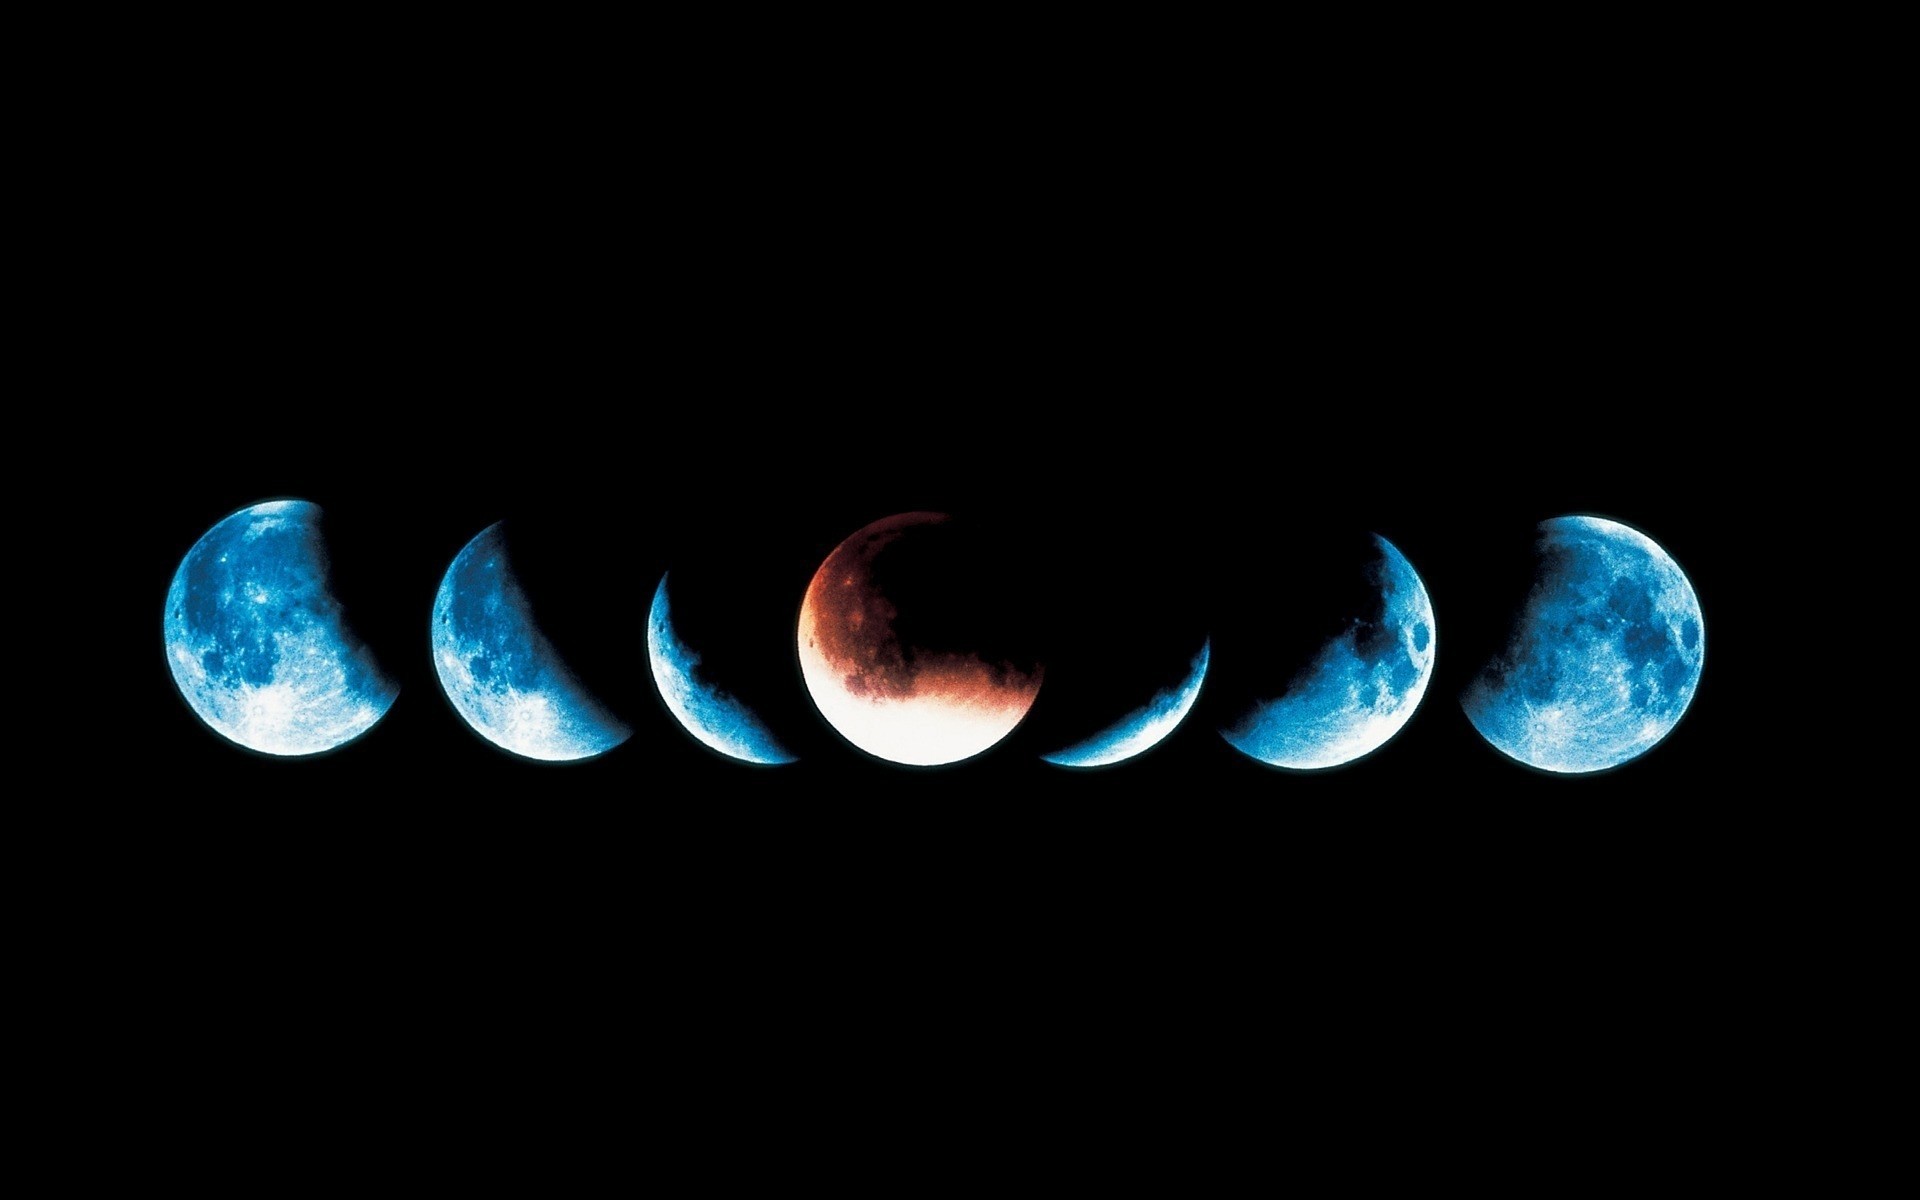 космос луна астрономия затмение темный сфера планеты небо наука яркий круглый природа полная луна шарообразные астрология светит фон фото